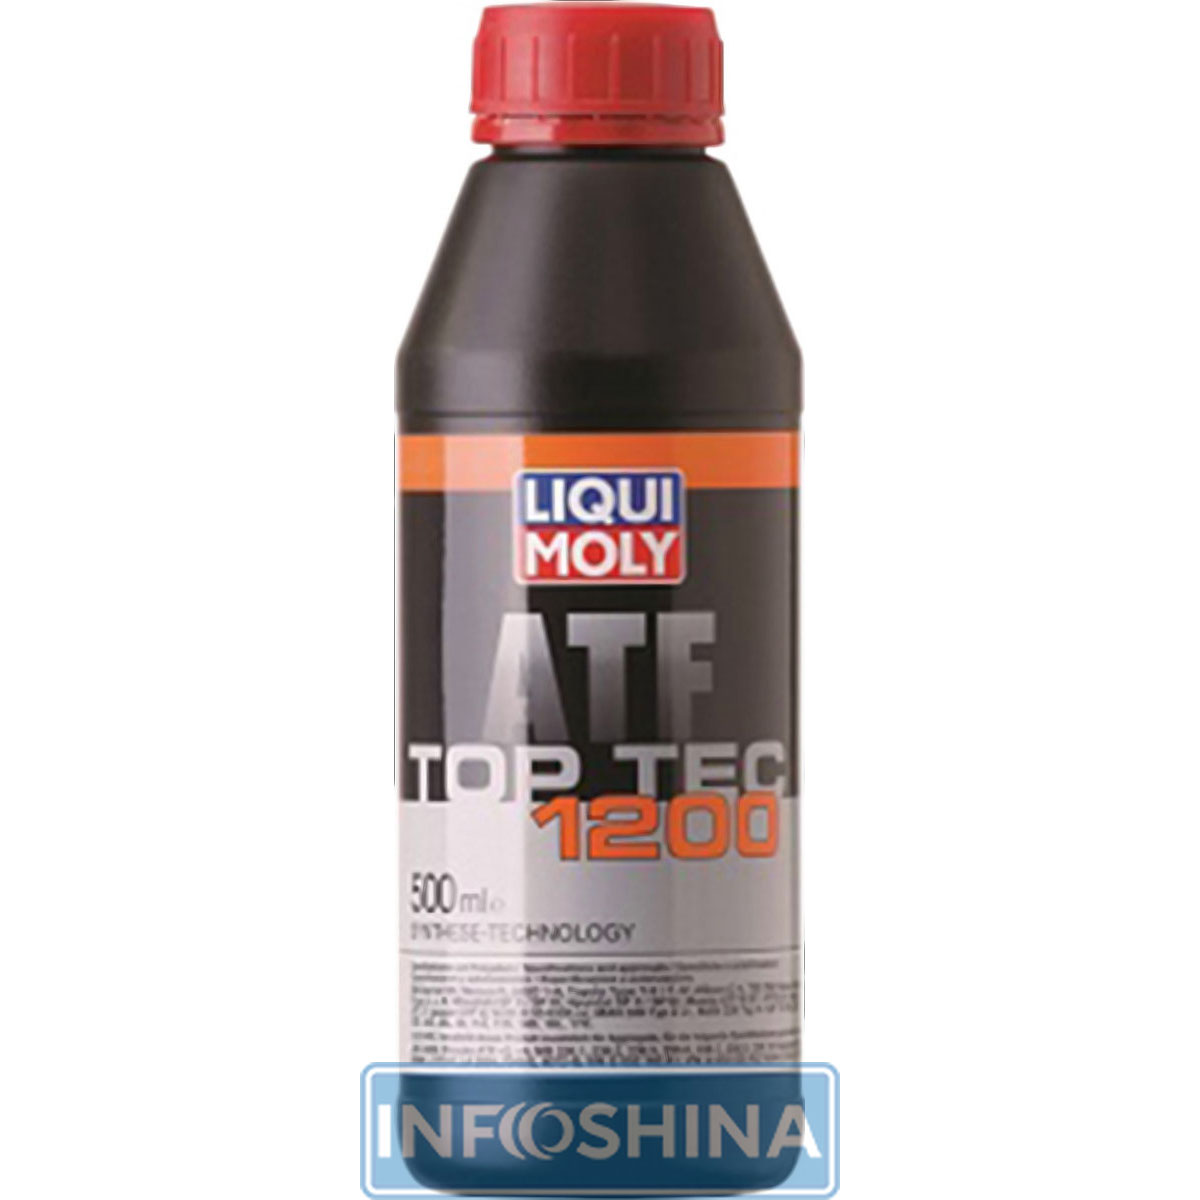 Купить масло Liqui Moly TOP TEC ATF 1200